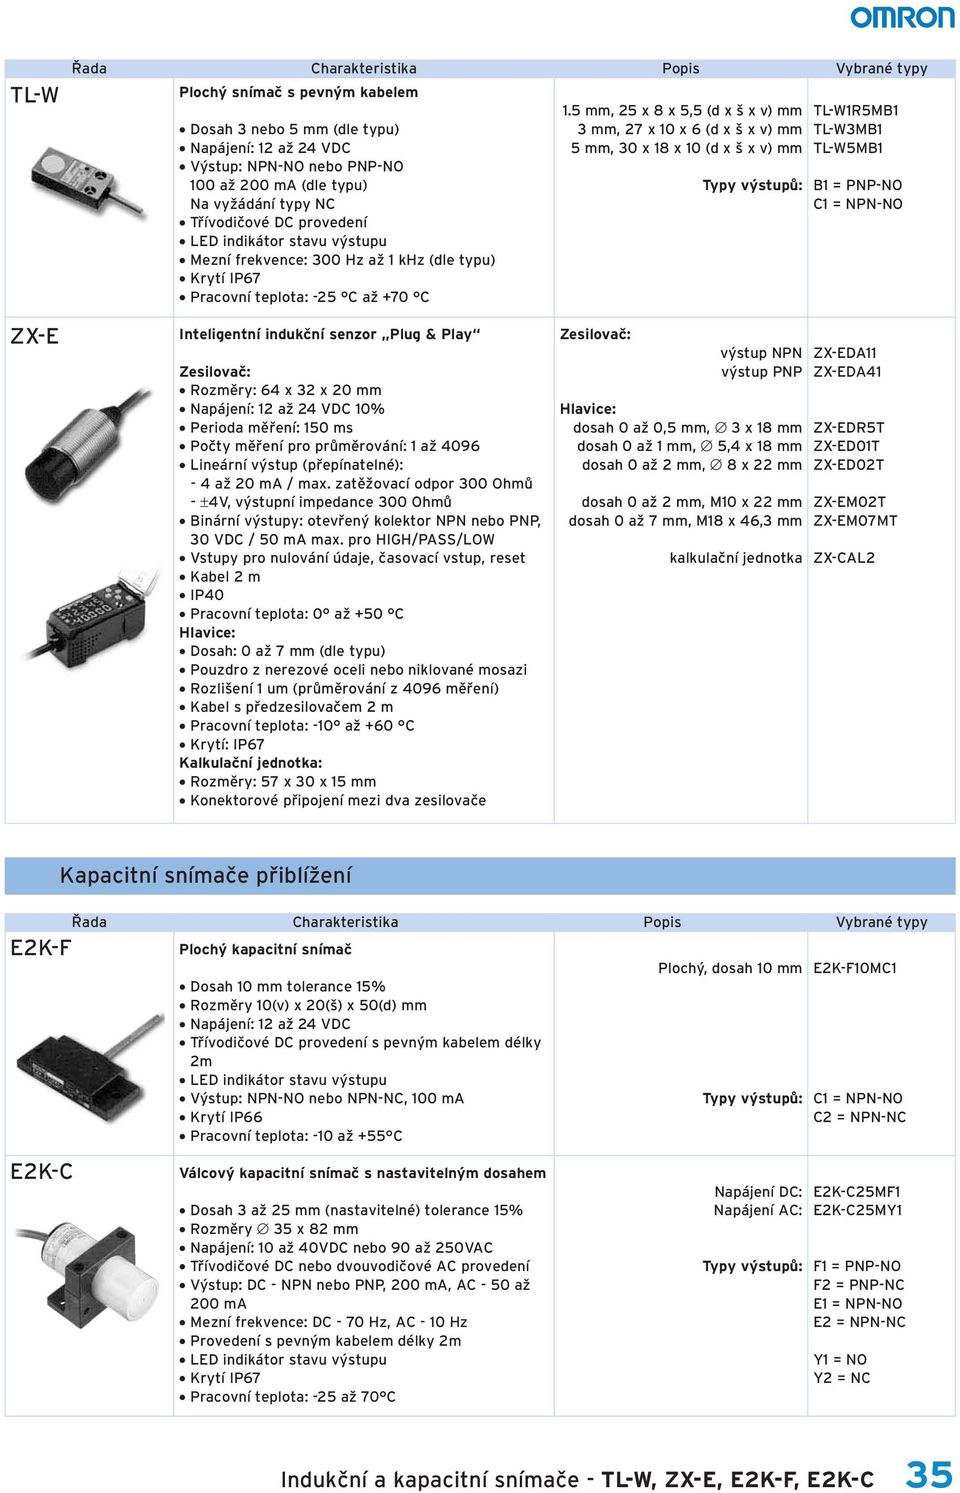 5 mm, 25 x 8 x 5,5 (d x š x v) mm 3 mm, 27 x 10 x 6 (d x š x v) mm 5 mm, 30 x 18 x 10 (d x š x v) mm TL-W1R5MB1 TL-W3MB1 TL-W5MB1 B1 = PNP-NO C1 = NPN-NO ZX-E Inteligentní indukční senzor Plug & Play